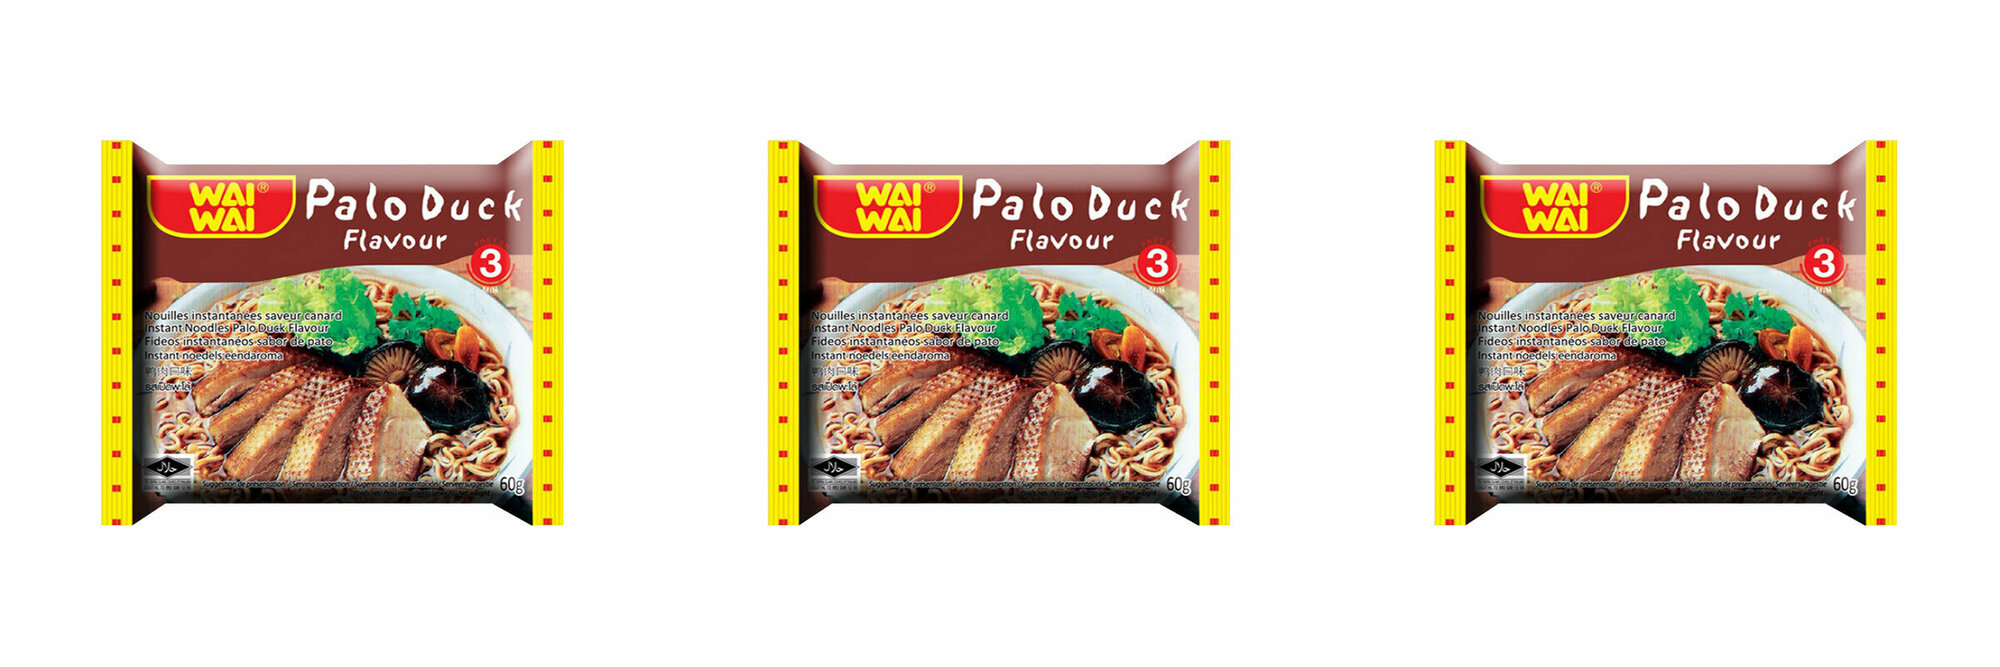 Wai wai Лапша быстрого приготовления Со вкусом утки, 60 г, 3 шт